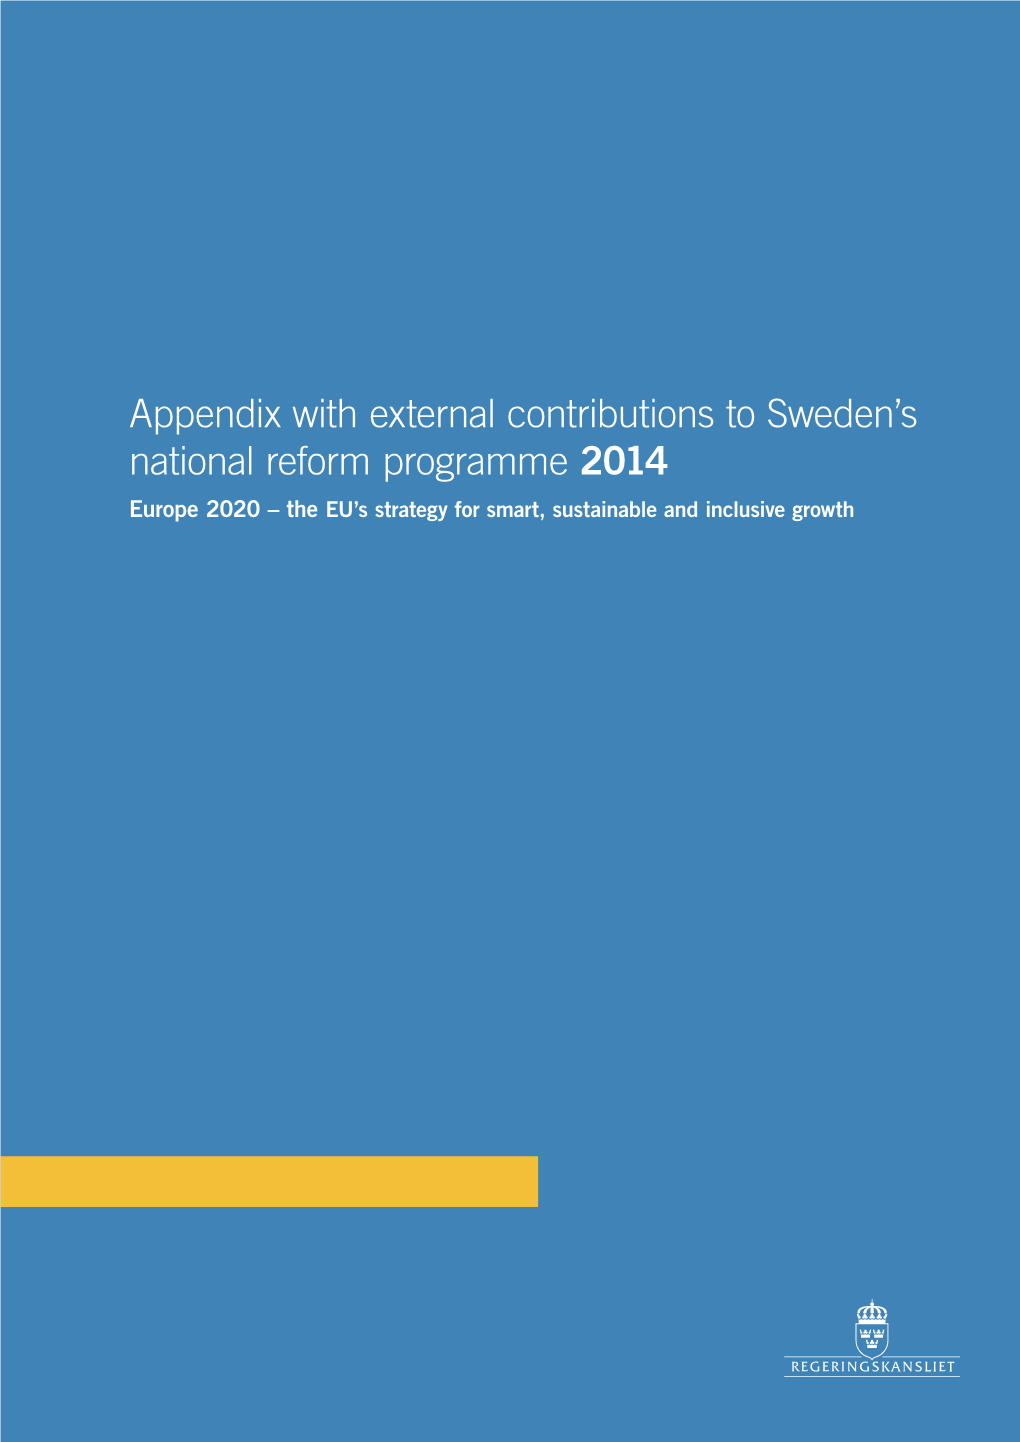 Sweden's National Reform Programme 2014